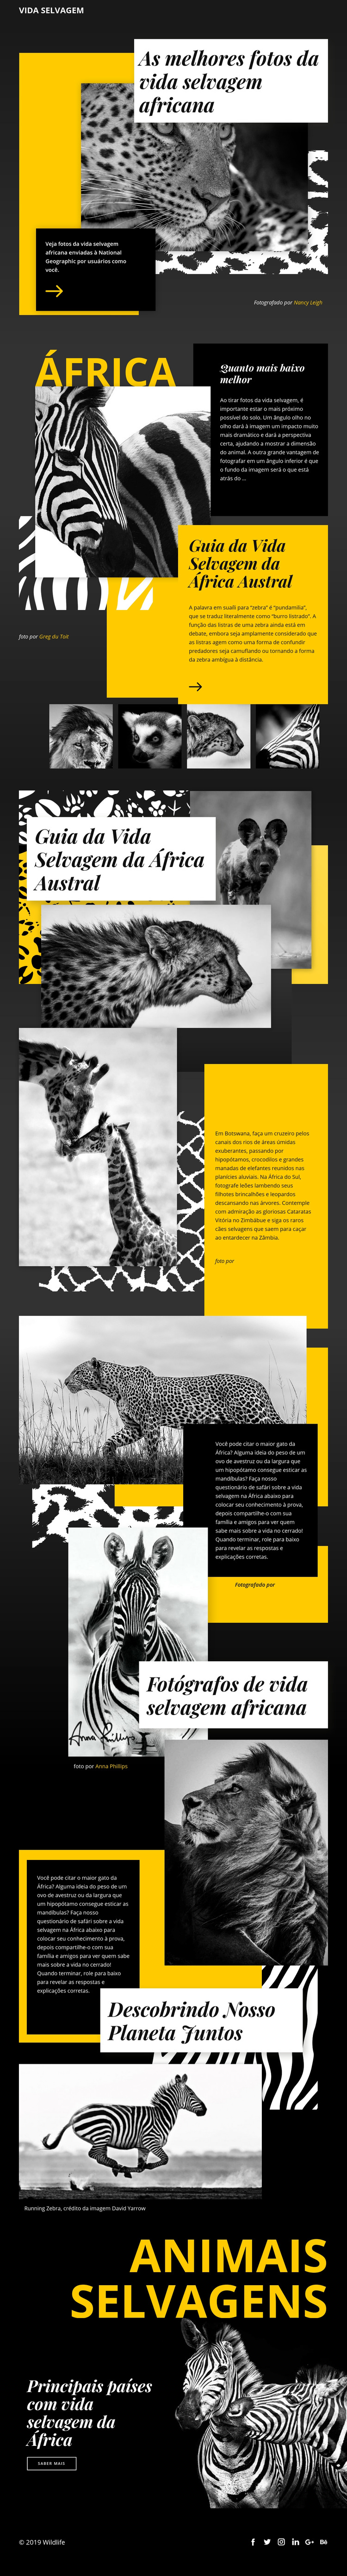 Fotos de animais selvagens Modelo de site